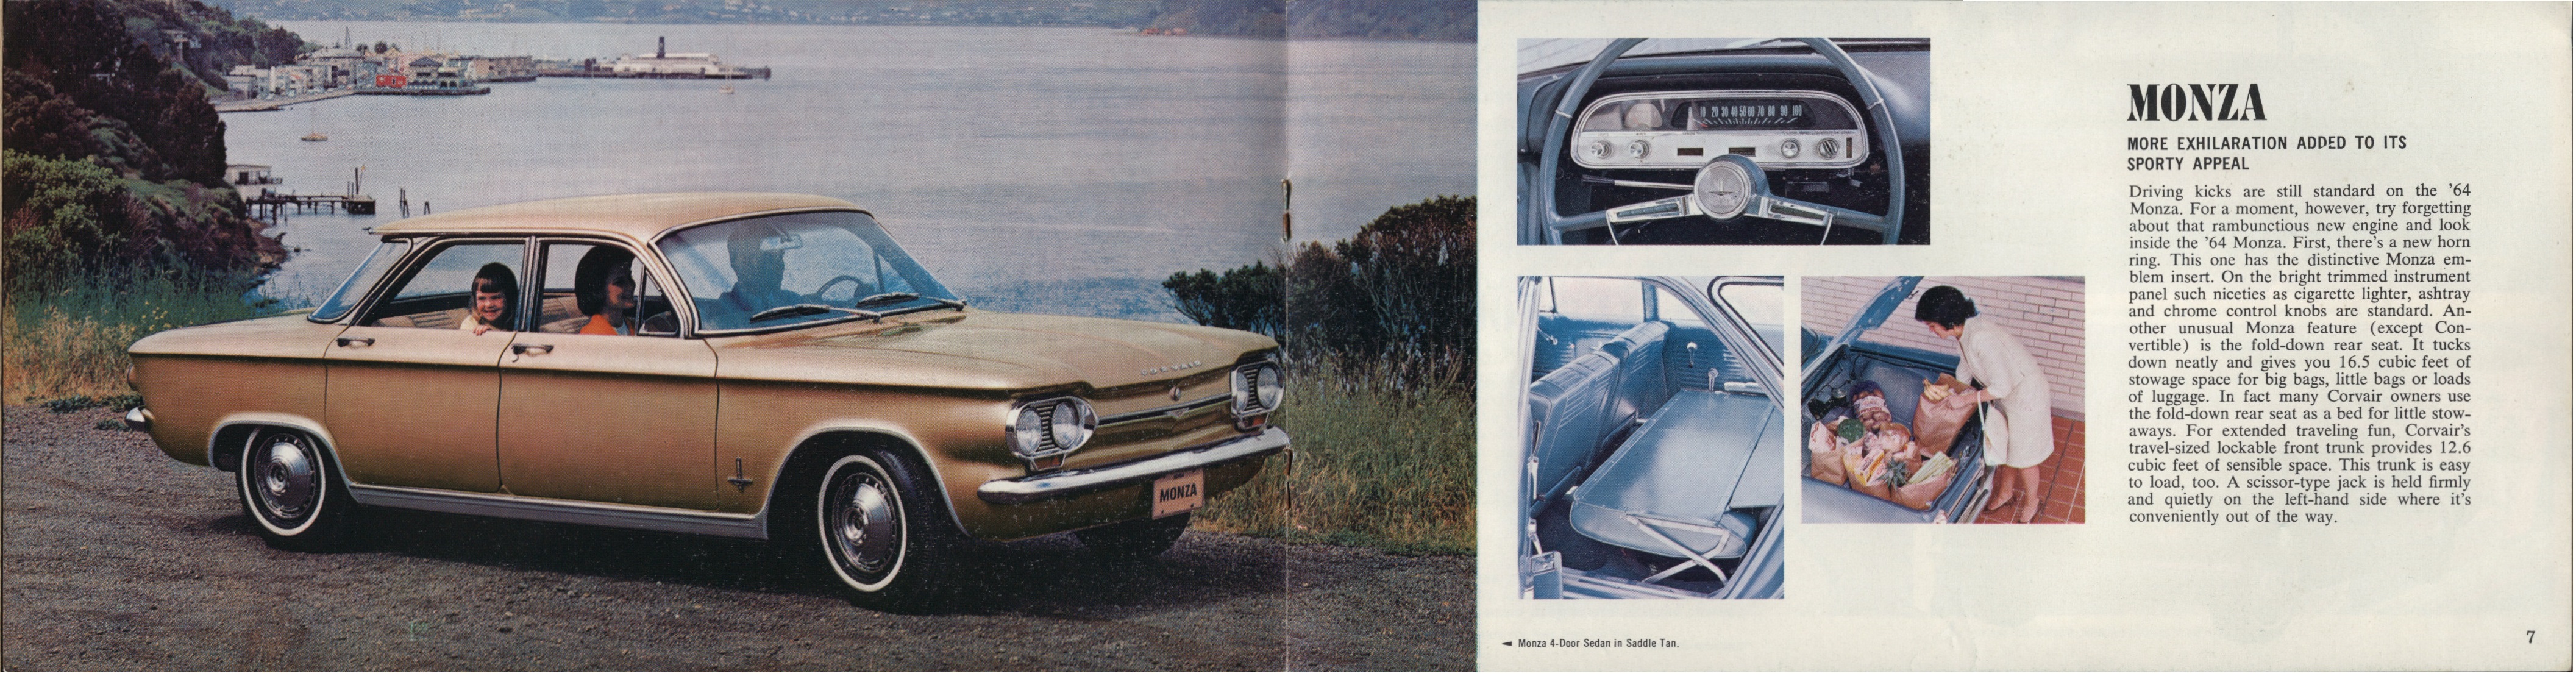 1964 Chevrolet Corvair Brochure Canada-06-07